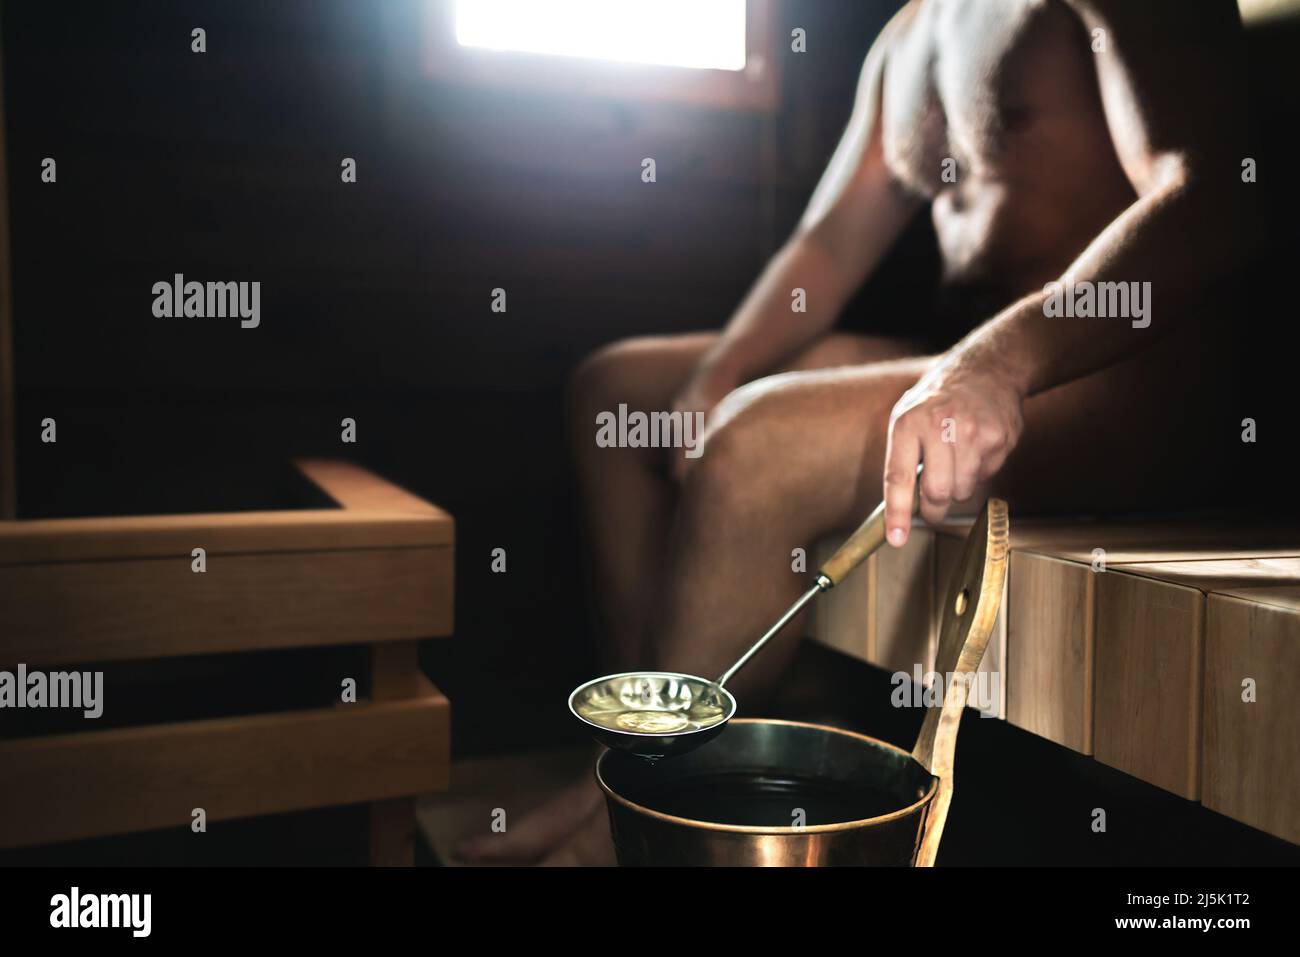 Homme au sauna. Bain de vapeur finlandais. Personne versant de l'eau sur les pierres chaudes du seau. Détente et bien-être traditionnels en Finlande. Banque D'Images